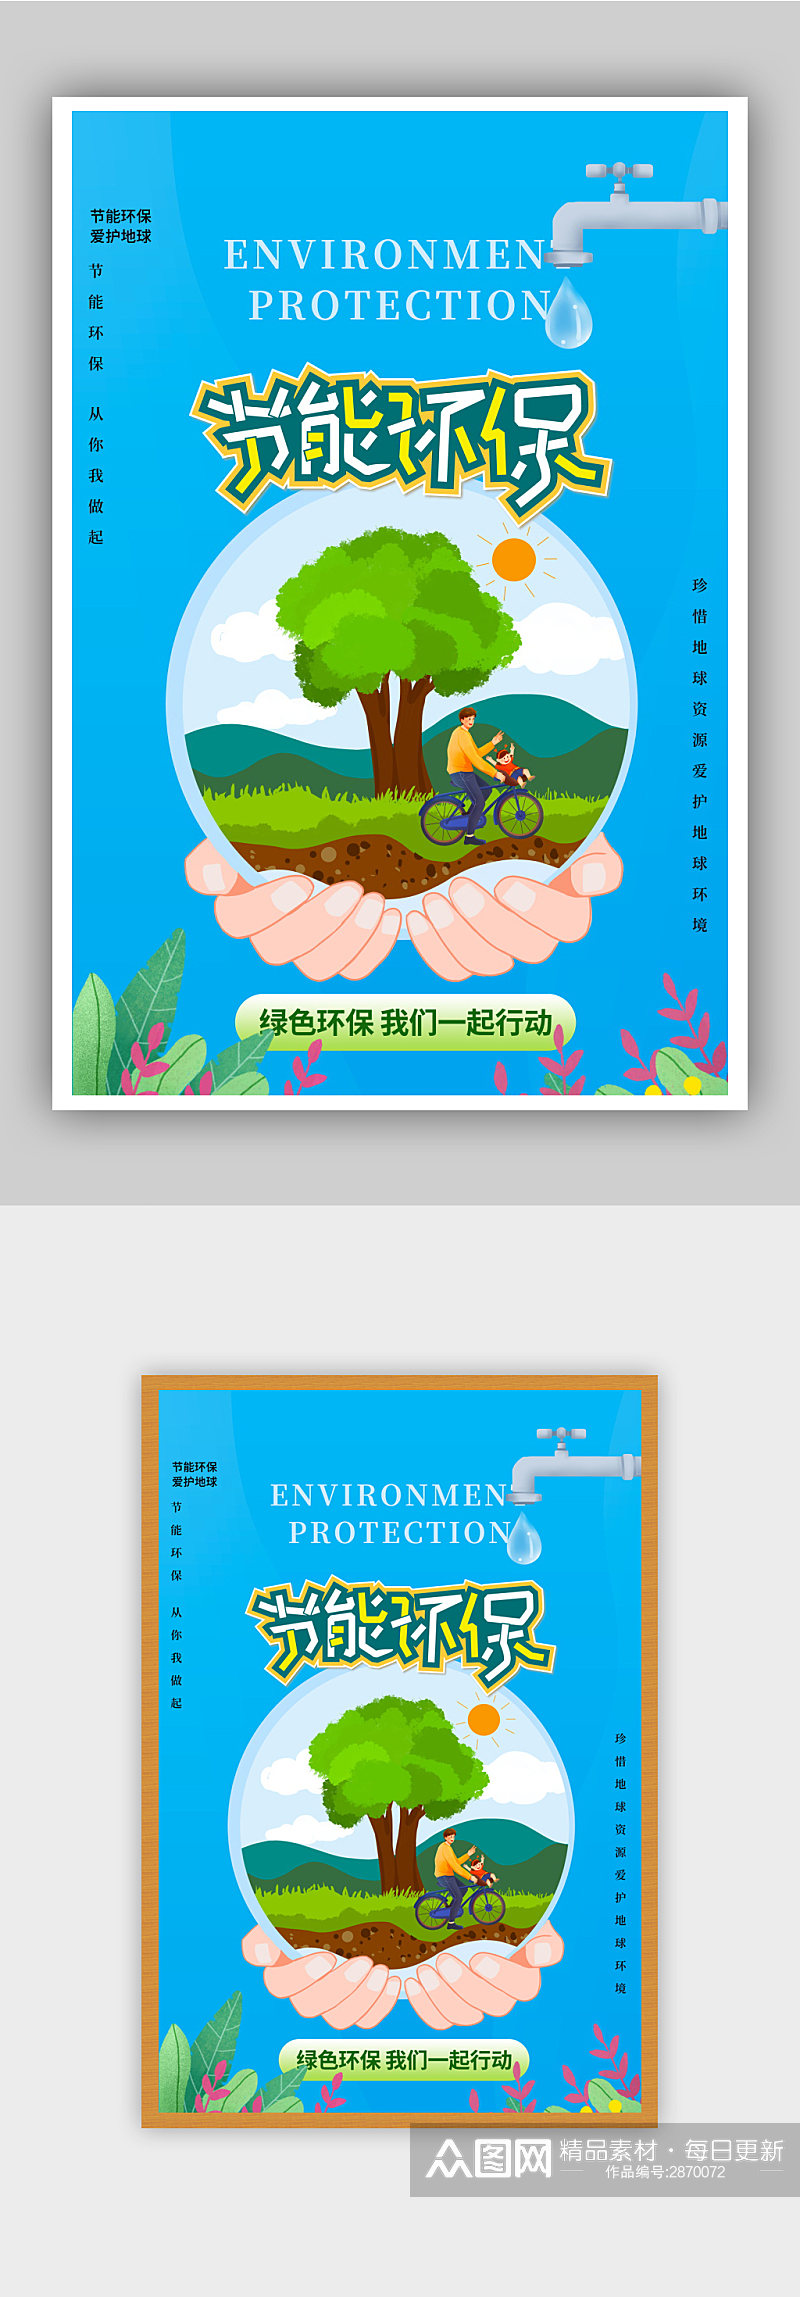 节能环保爱护环境公益海报素材